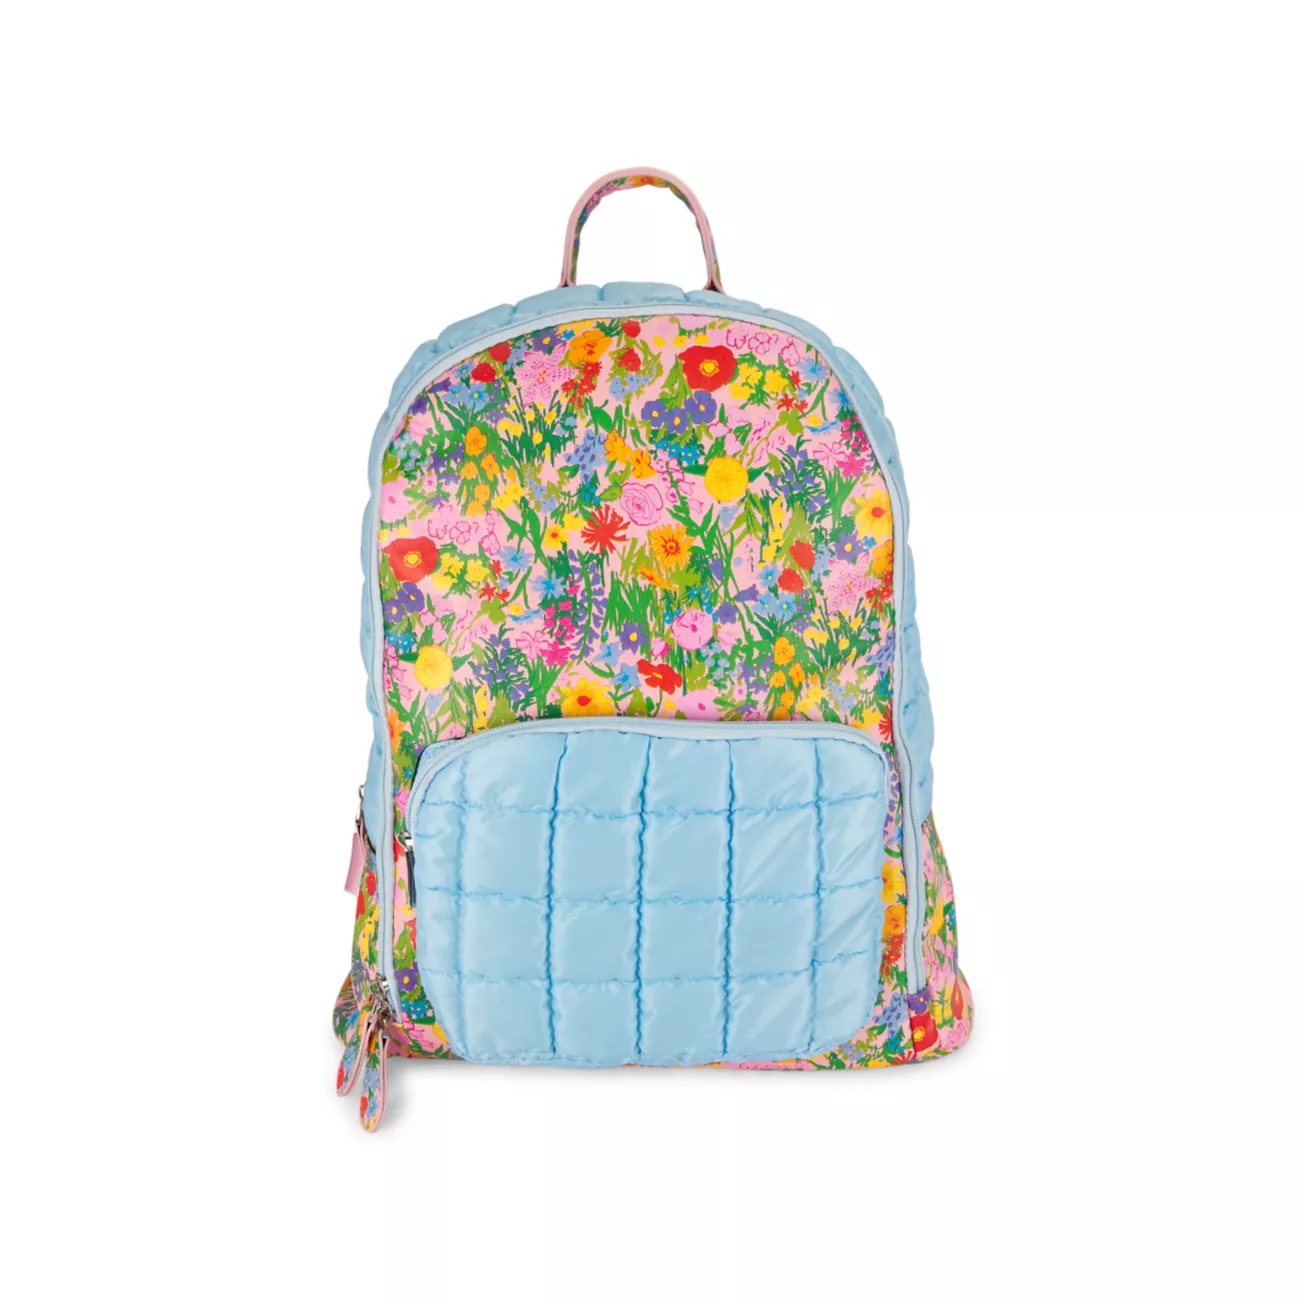 Слоеный рюкзак с цветочным принтом для девочки Bari Lynn